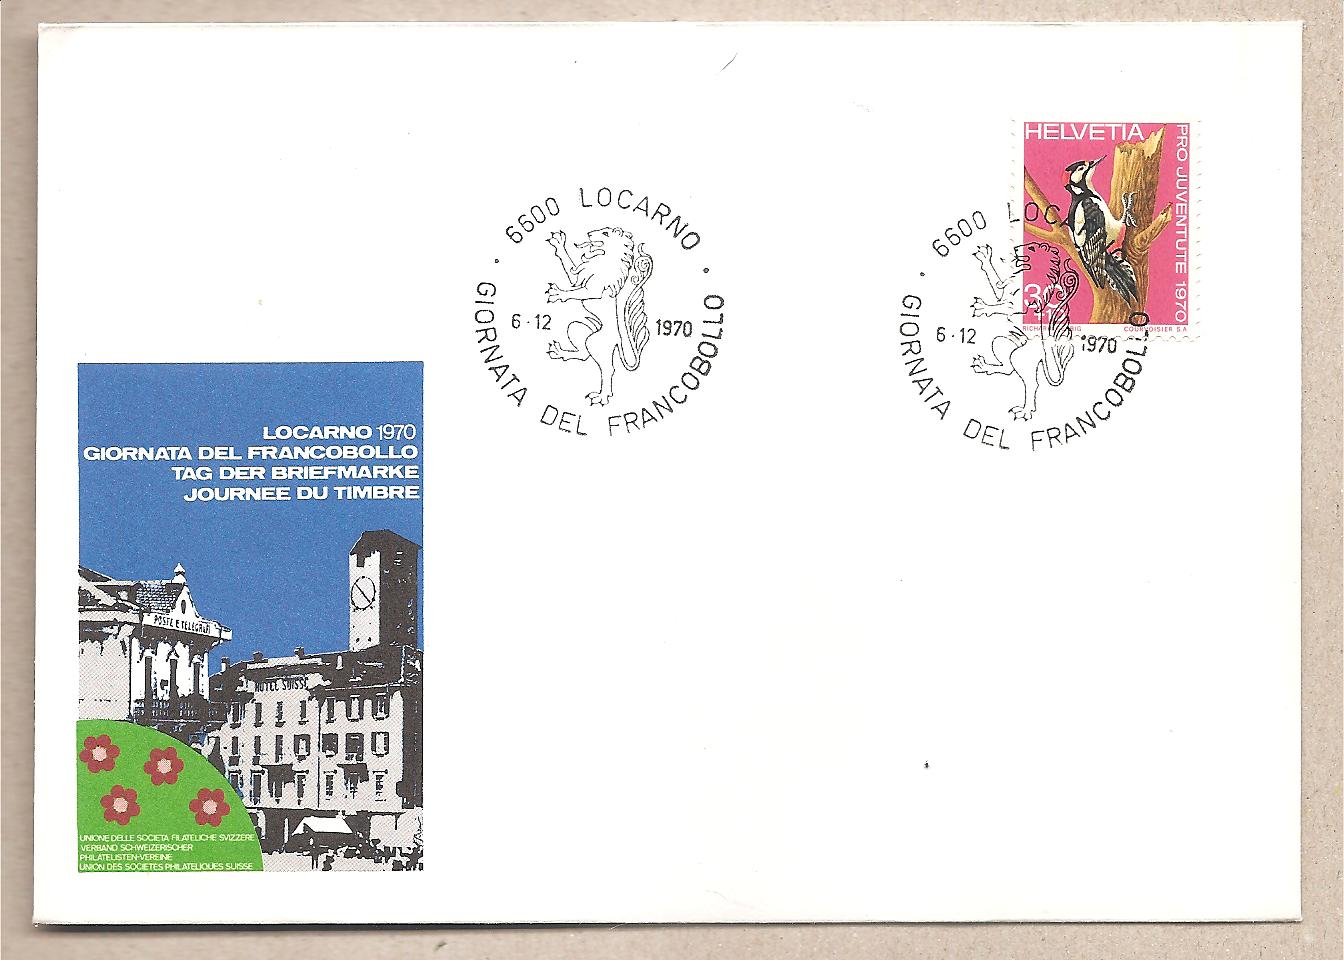 49013 - Svizzera - busta FDC: Soggetti tratti dalla storia postale - 1960